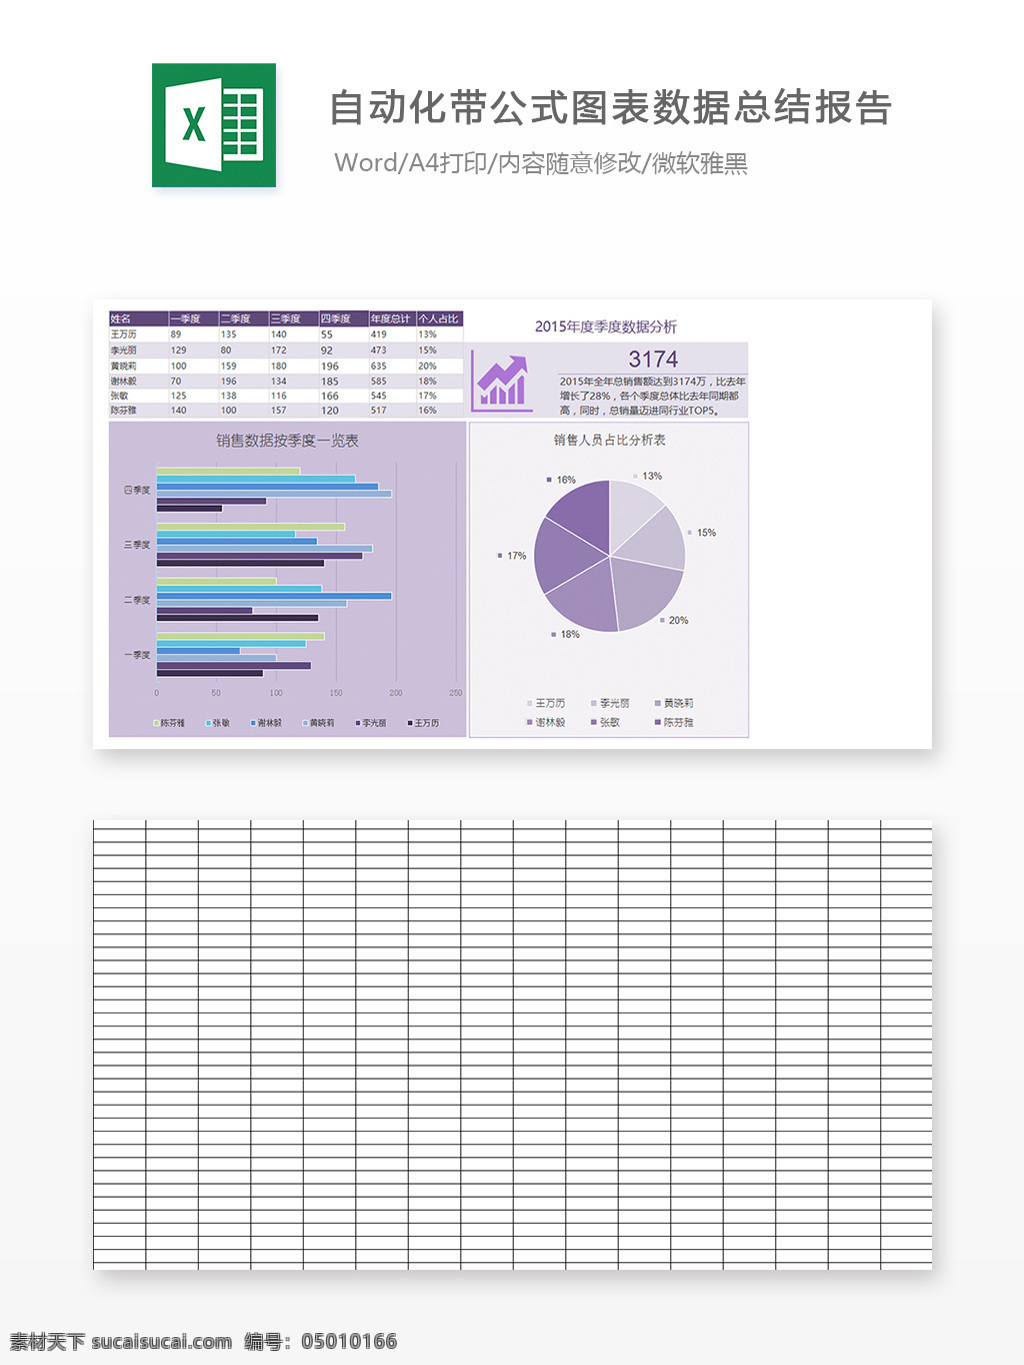 自动化 带 公式 图表 数据 总结 报告 统计 营销 办公 明细表 饼图 报表 分析 图表模板 柱形图 行业表格 折 营销实战工具 营销管理工具